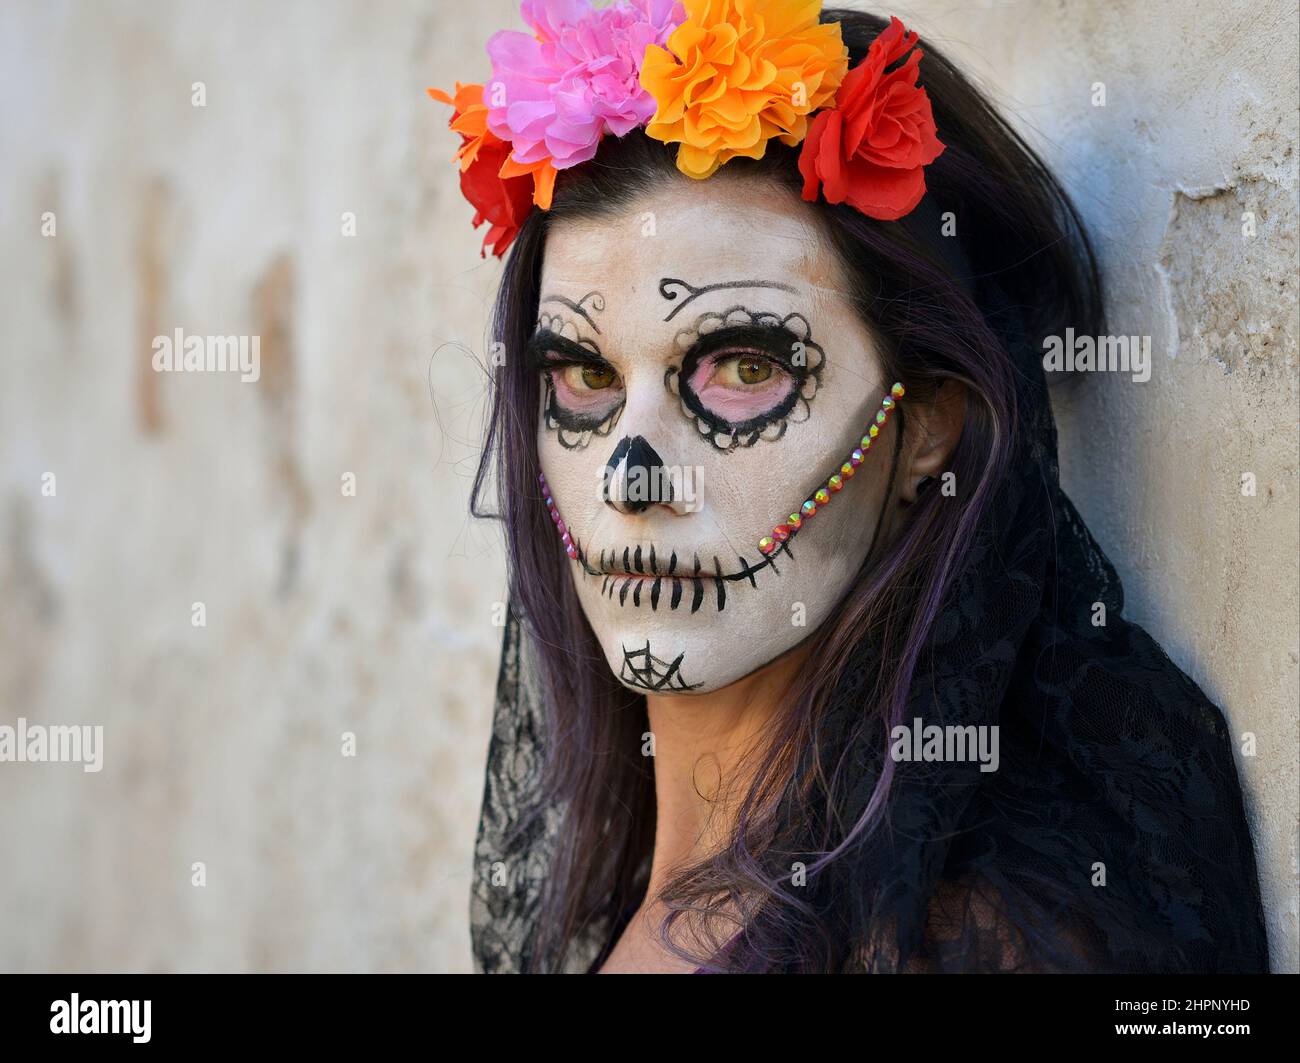 Junge schaurige kaukasische Frau mit gruseligen weißen Gesichtsbemalungen und bunten Blumen am mexikanischen Tag der Toten (Día de los Muertos) schaut den Betrachter an. Stockfoto